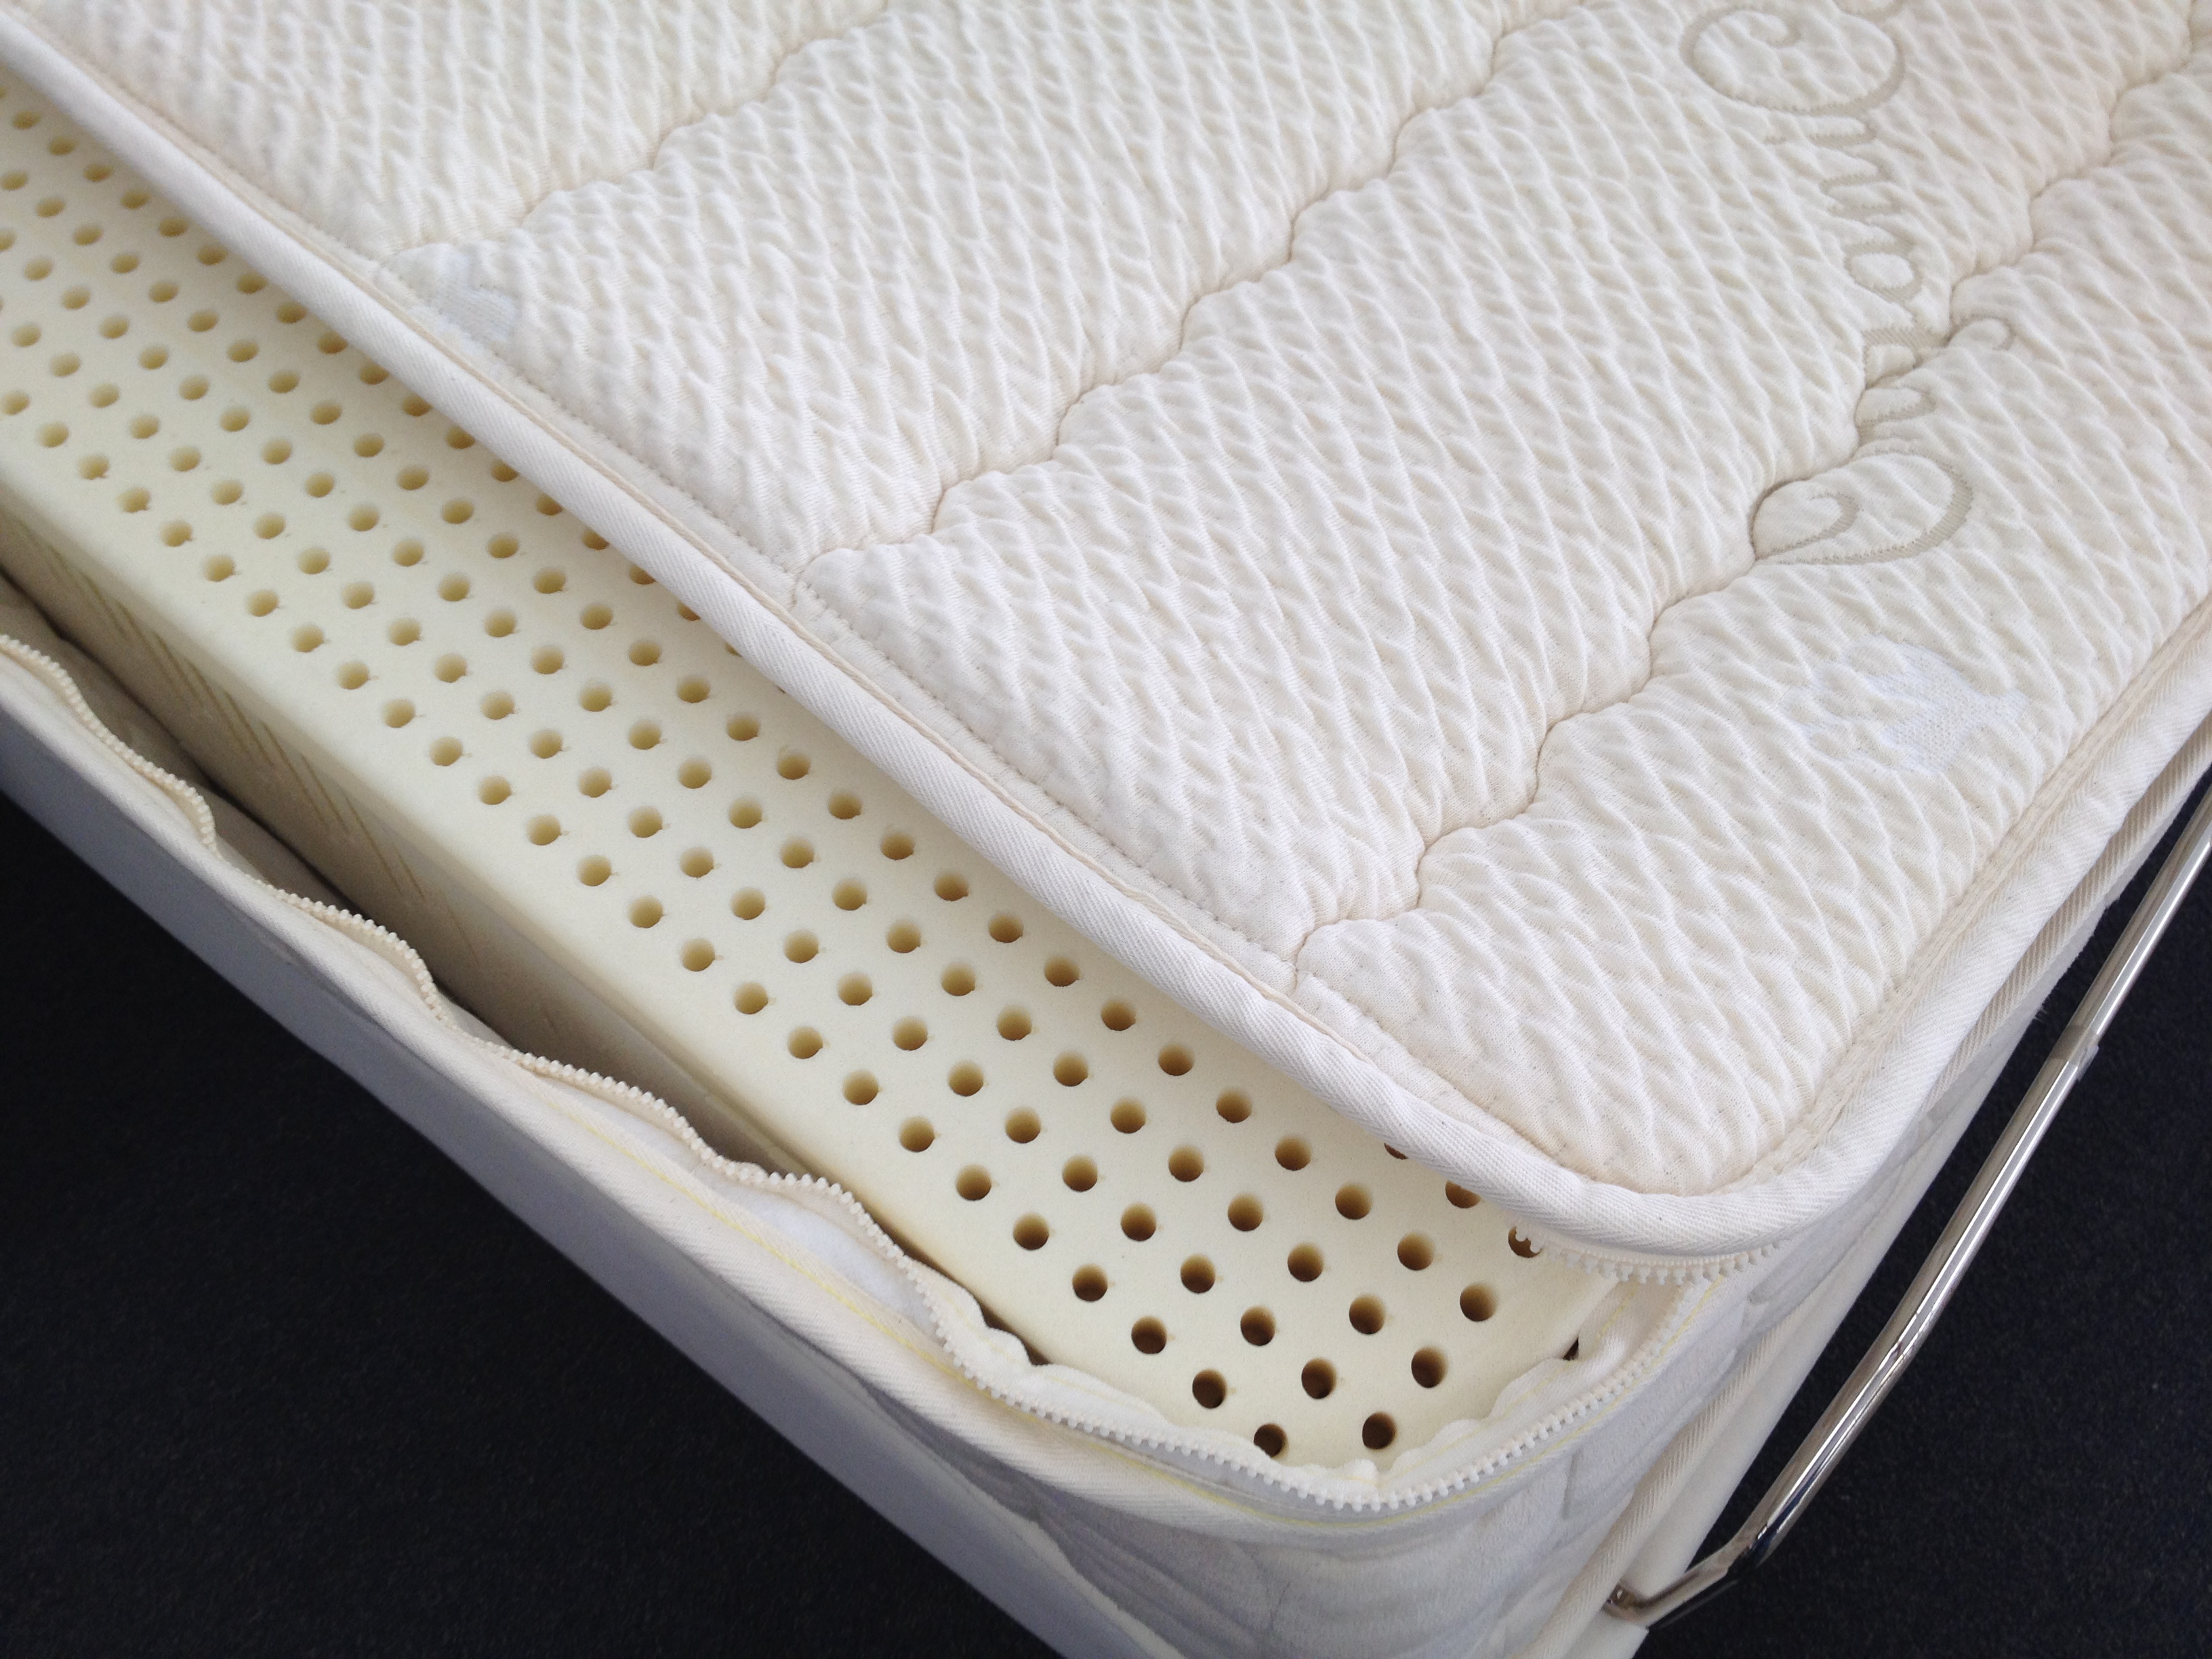 Gilbert natural organic latex mattress